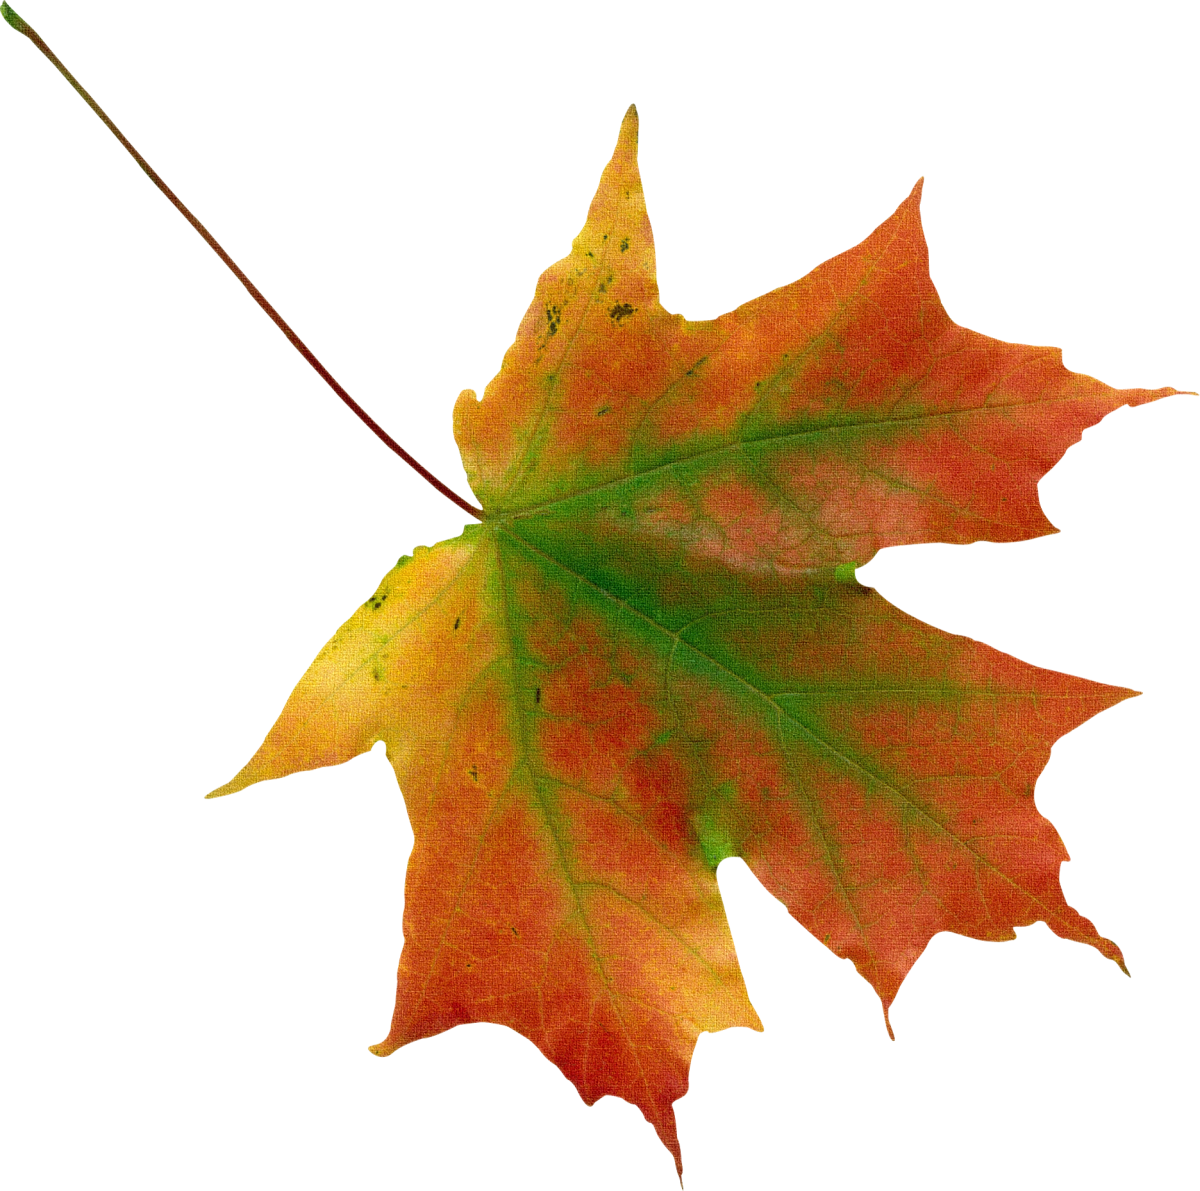 Картинки осенних листьев. Осенний кленовый листок. Осенние кленовые листочки. Осенние листья клена. Осенние листья на прозрачном фоне.